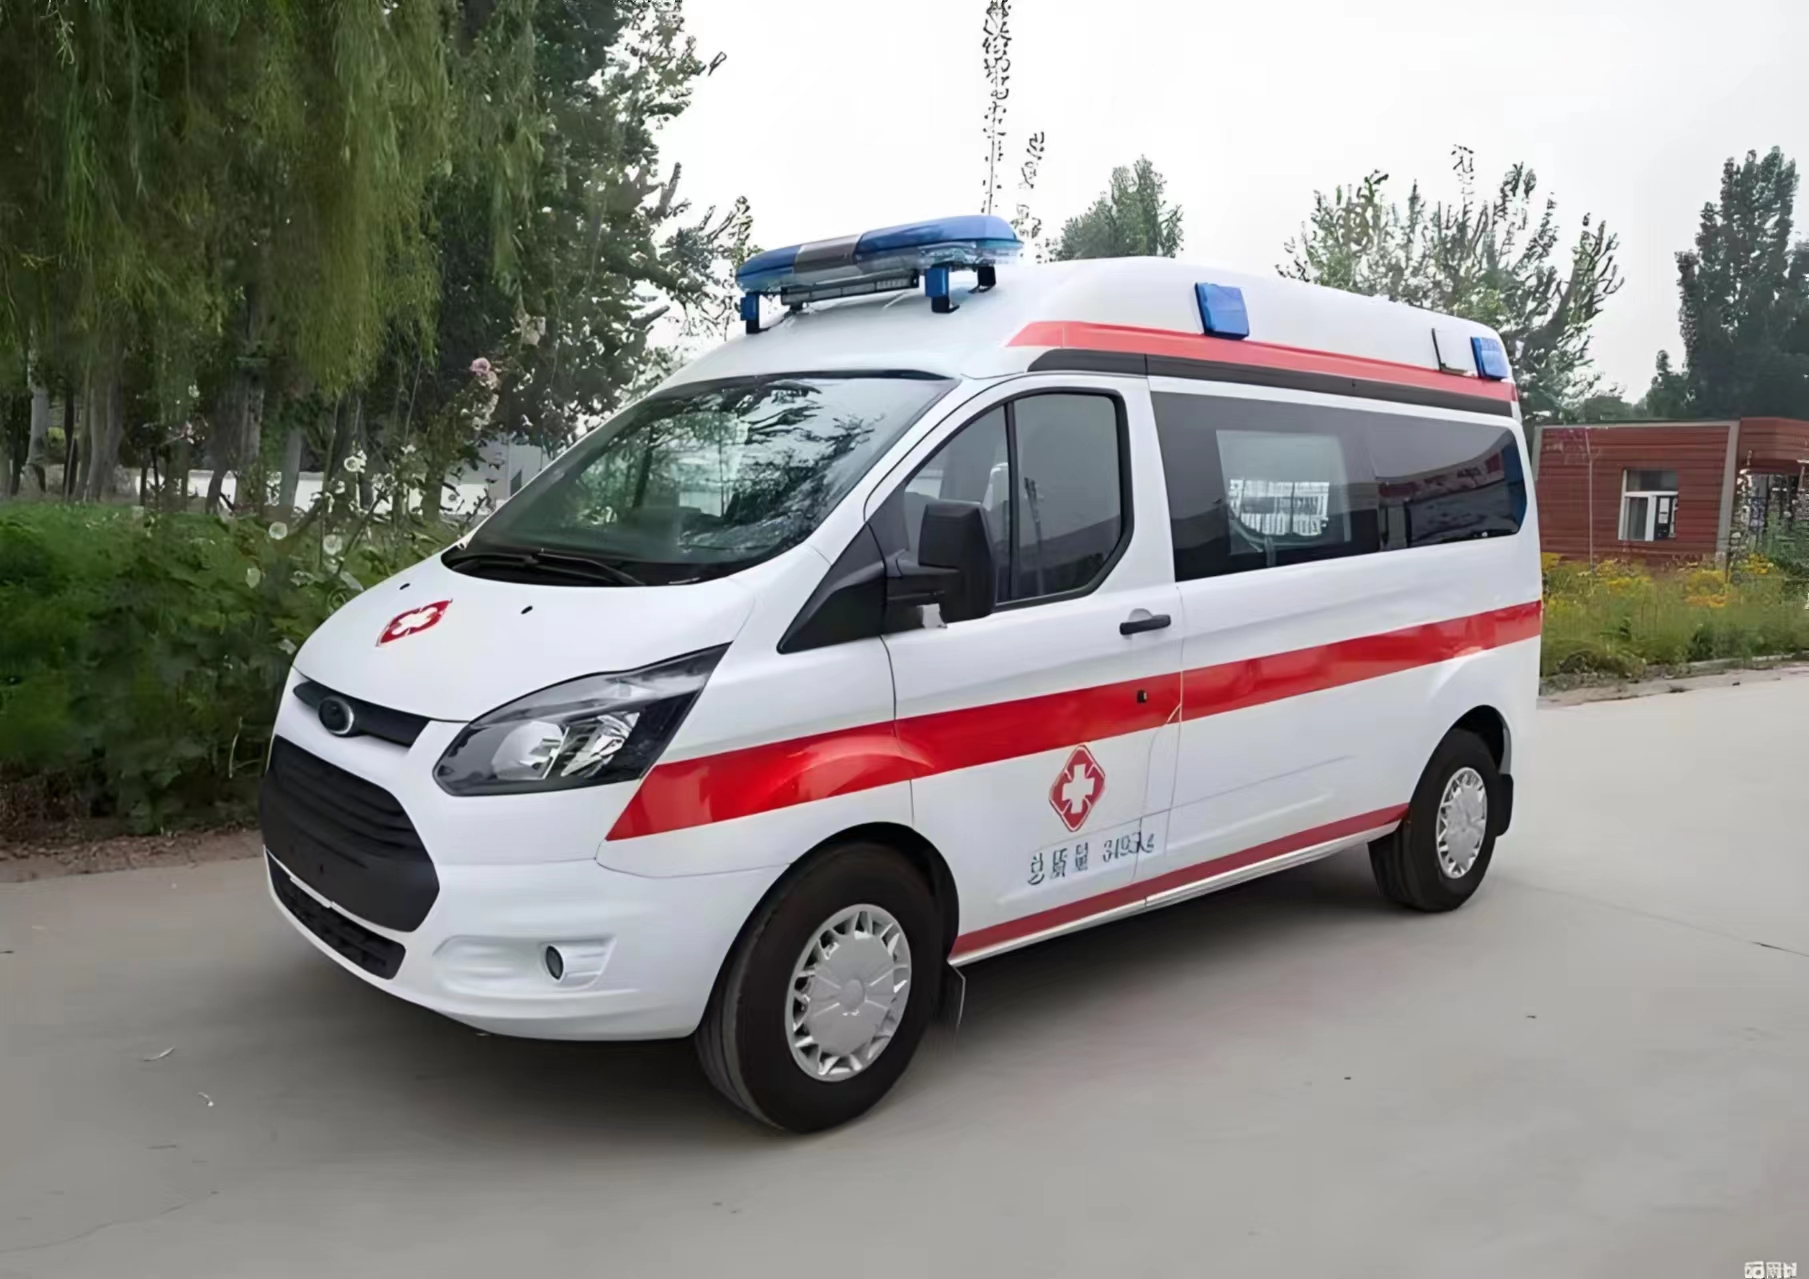 乌鲁木齐非急救转运平台-救护车出租转运-救护转运中心